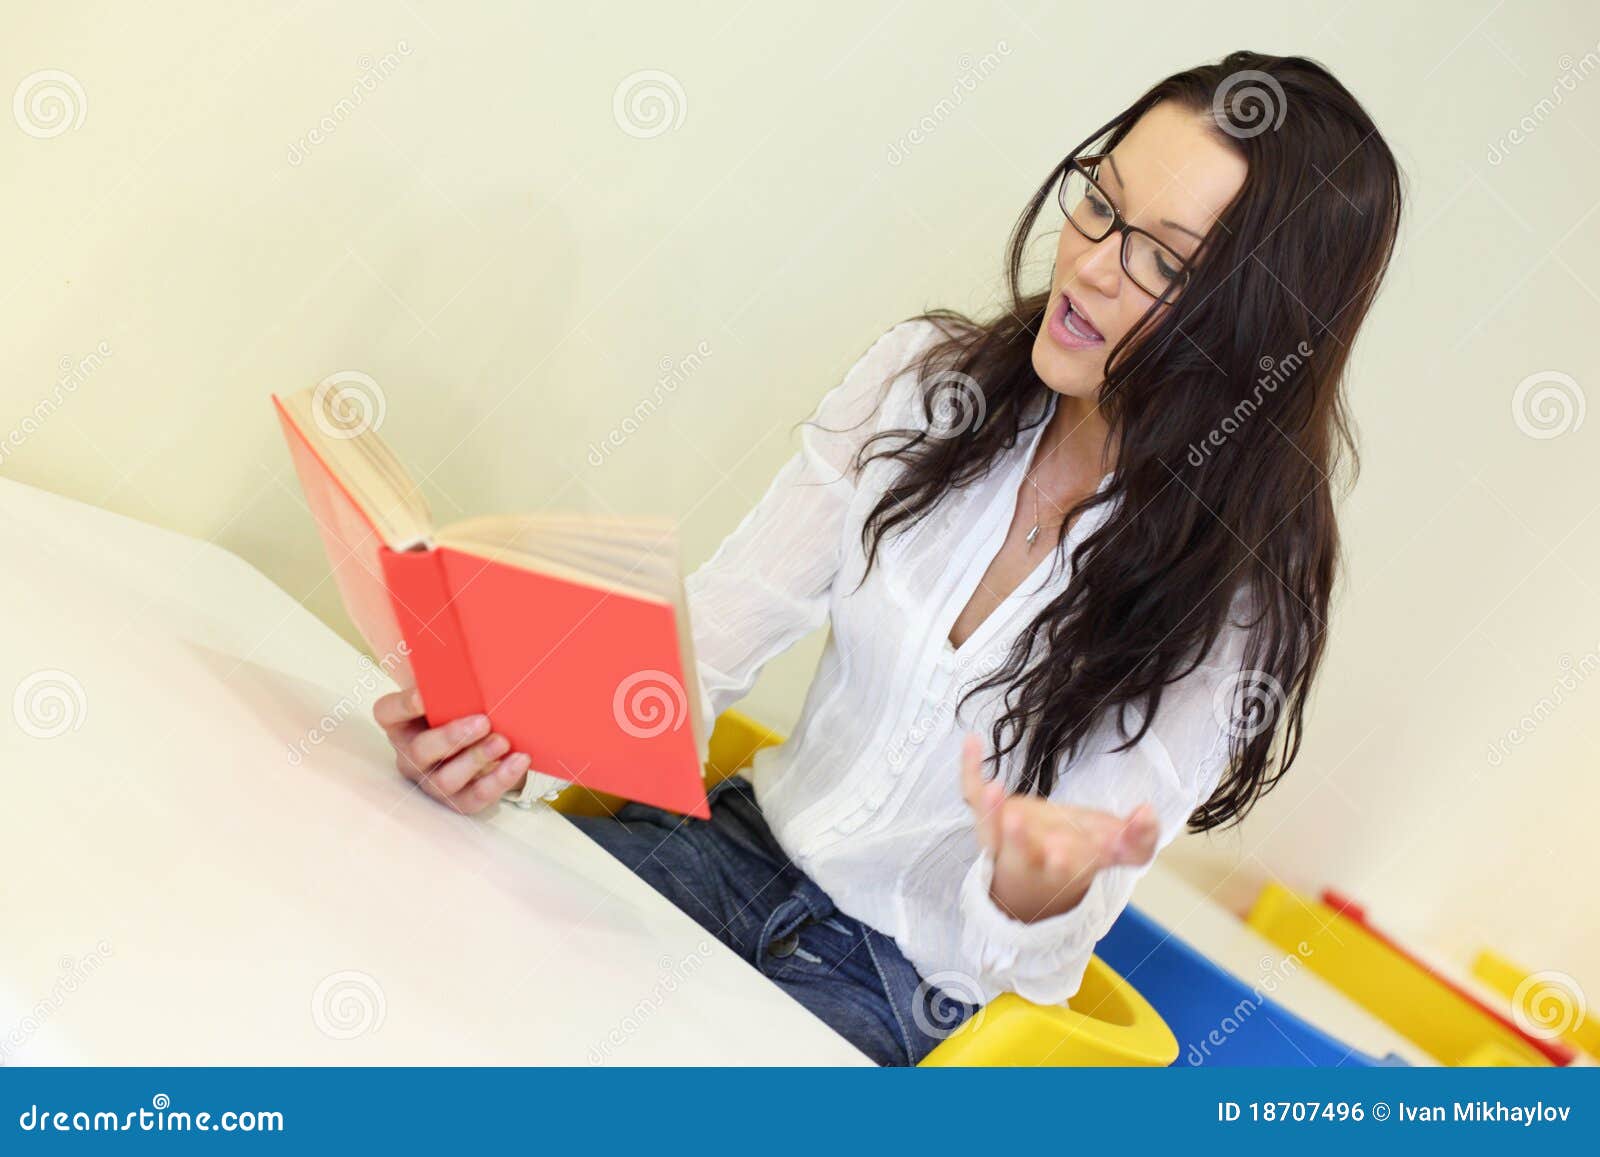 Девушка читает на вибраторе. Читающая девушка в белом и желтом. Девушка с книгой в руках. Девушка с книгой вид с боку. Женщина с учебниками на коленках.